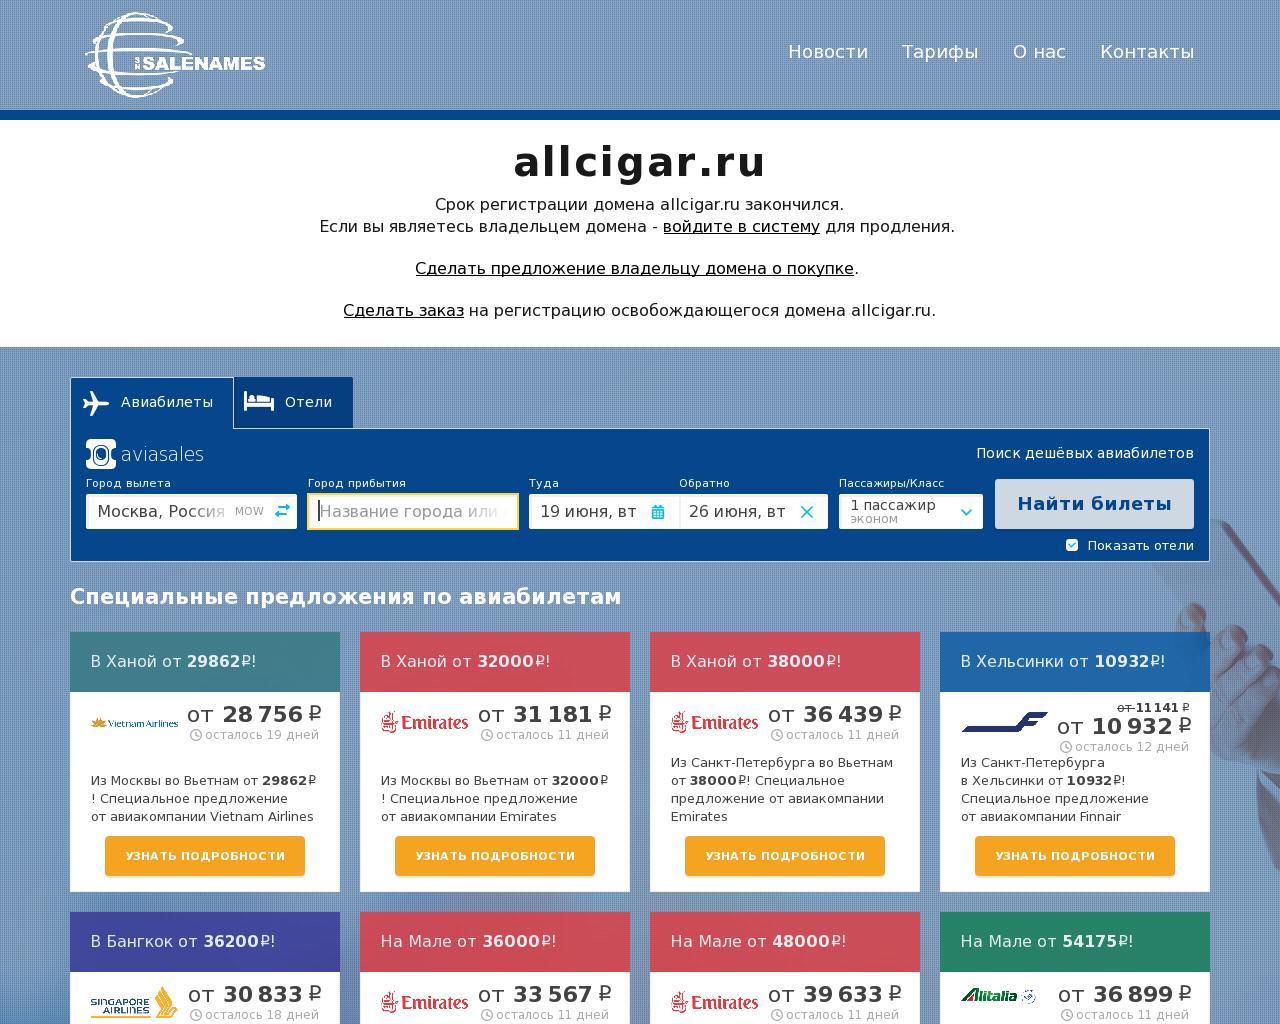 Изображение сайта allcigar.ru в разрешении 1280x1024